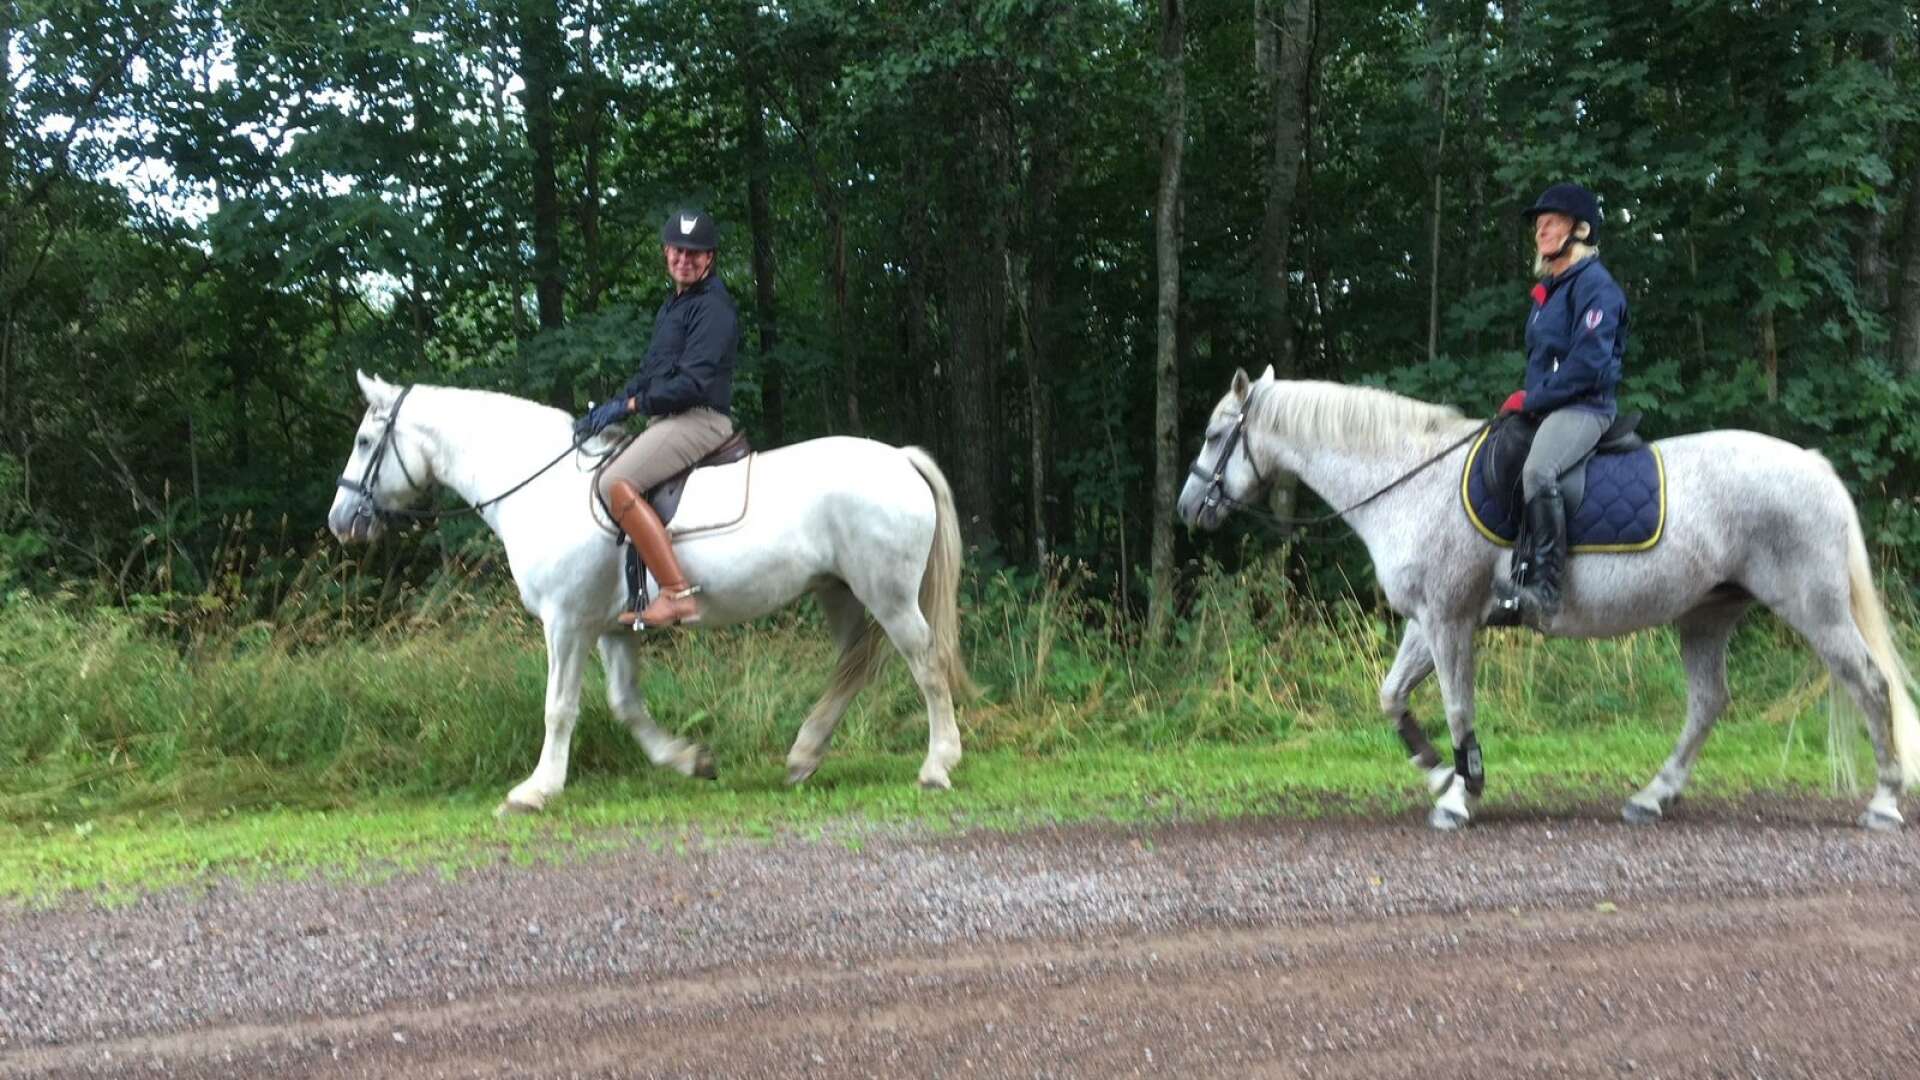 Charles Jonsson, till vänster, och Maria Dahlbäck på Åmåls ridklubbs hästar Maggie och Disa spanar längs vägkanterna i Finserud i hopp om att hitta passen.